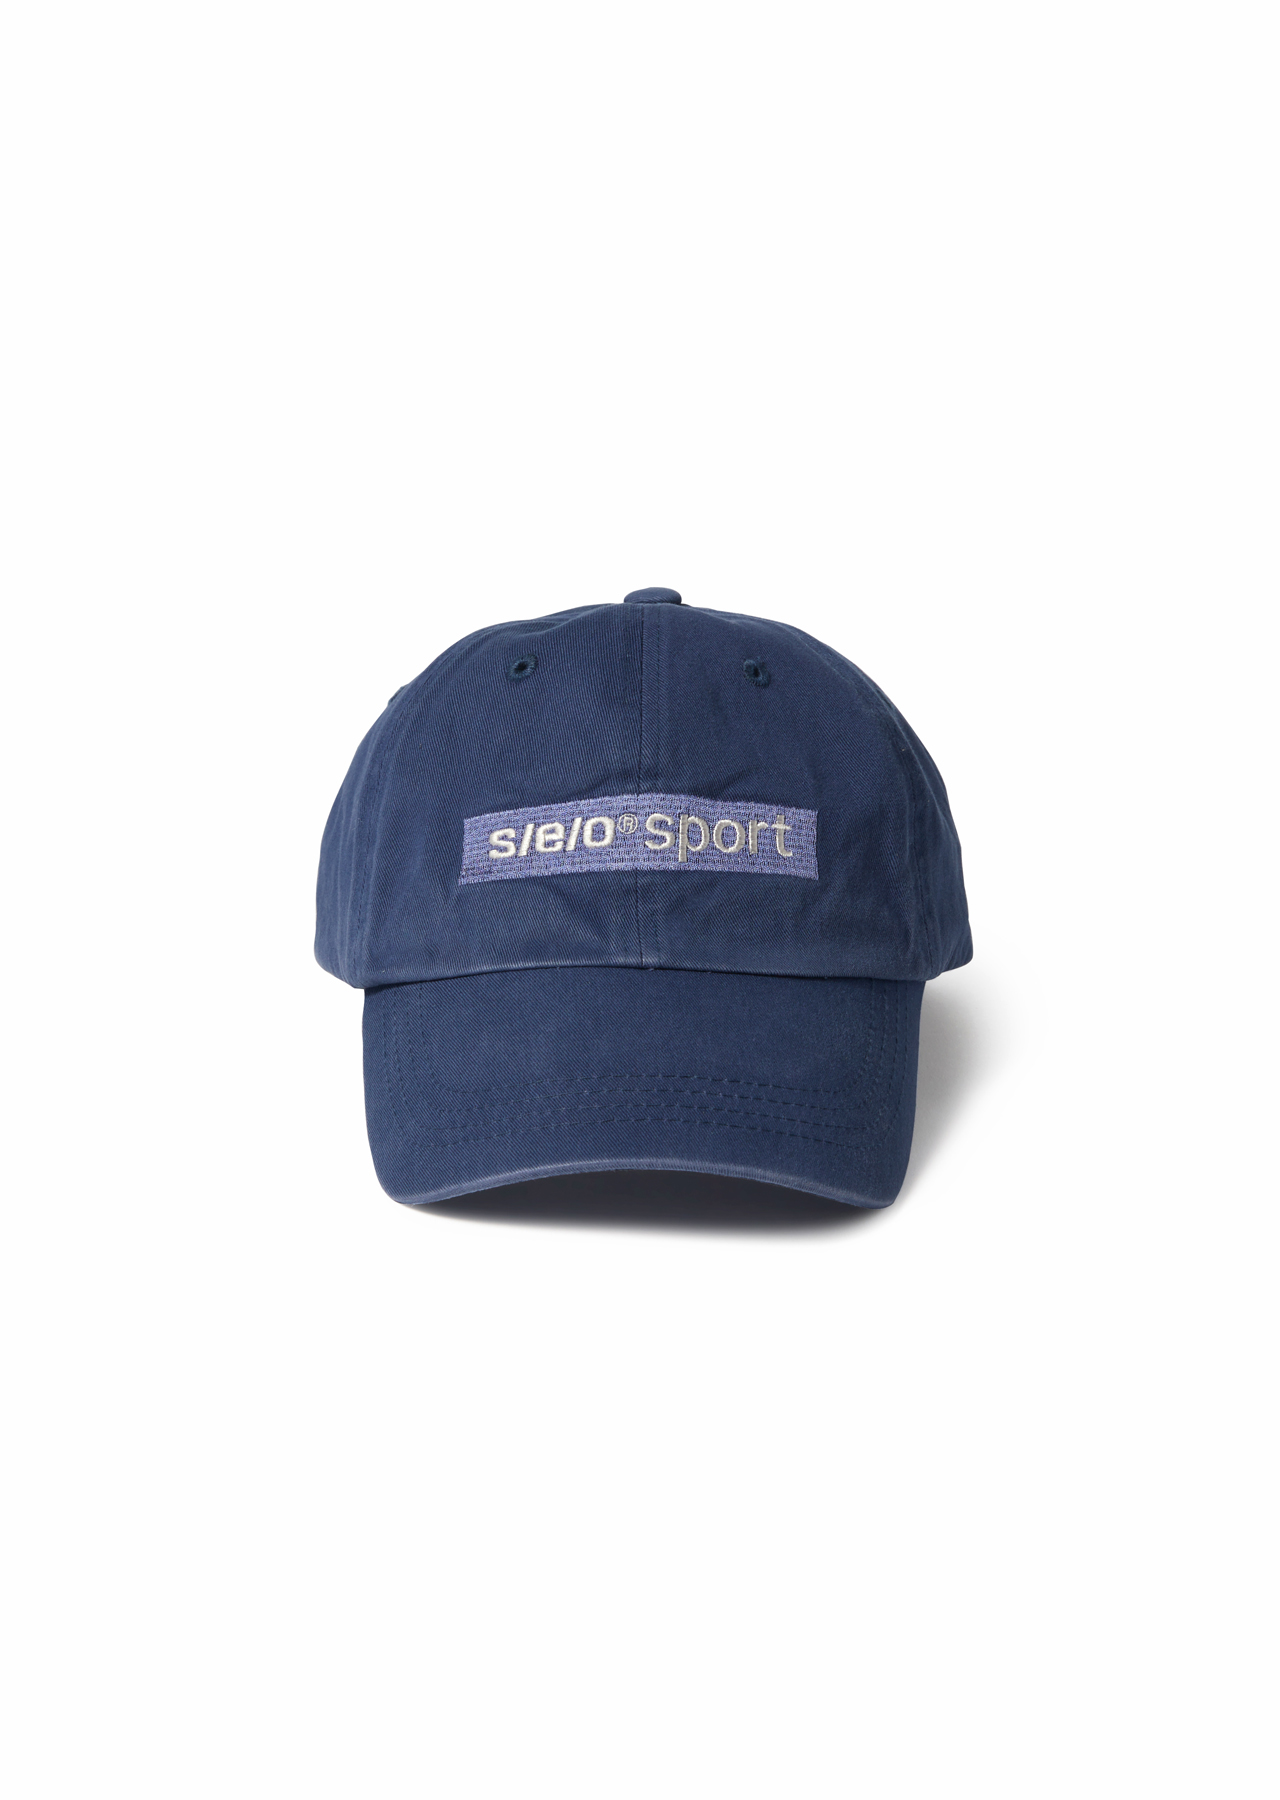 s/e/o SPORT CAP NAVY BLUE